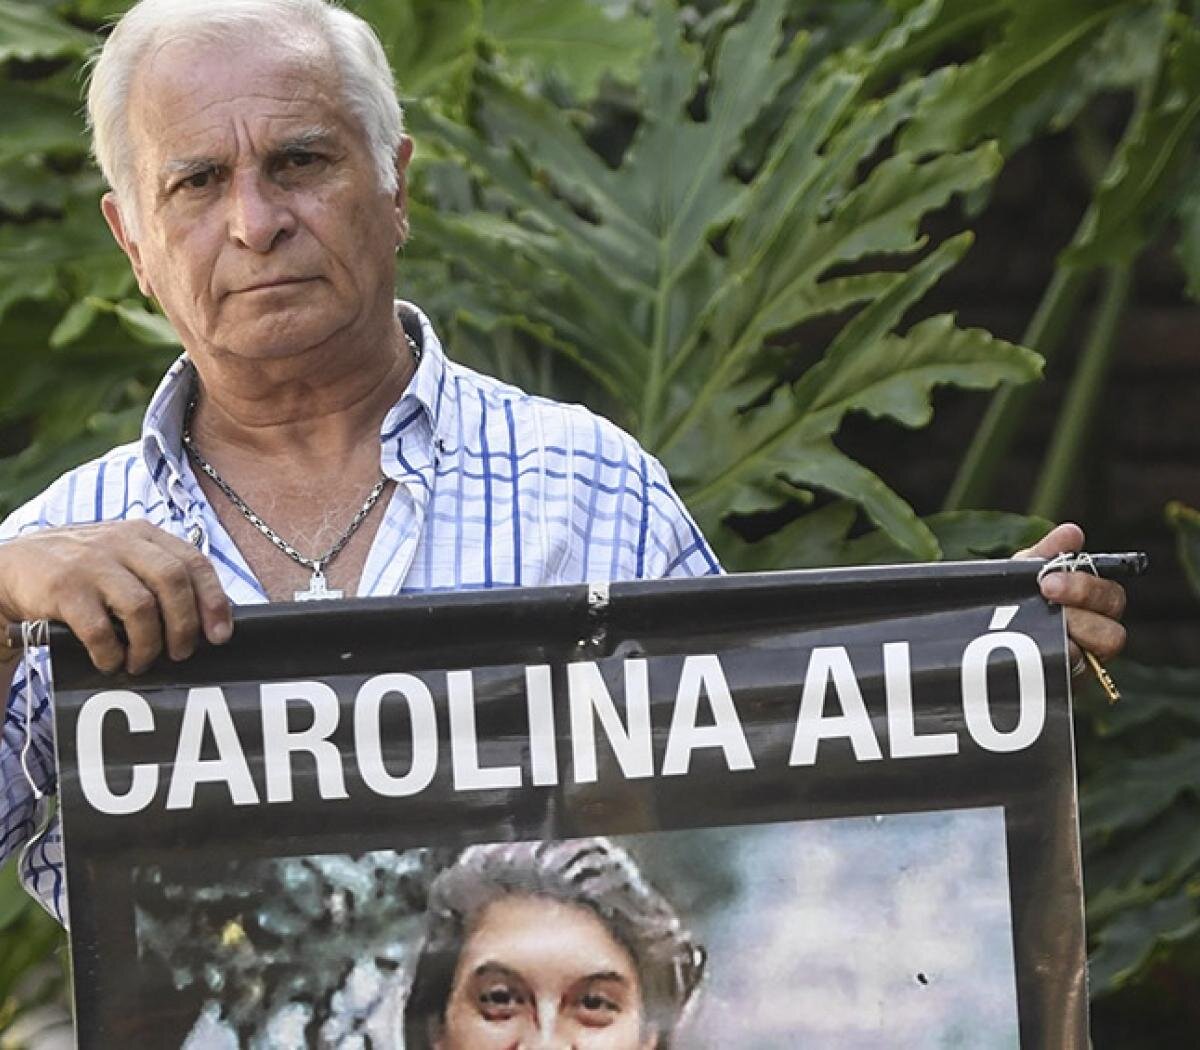 Femicidio de Carolina Aló: Fabián Tablado tiene una perimetral de 300 kilómetros con el padre de la víctima por amenazas